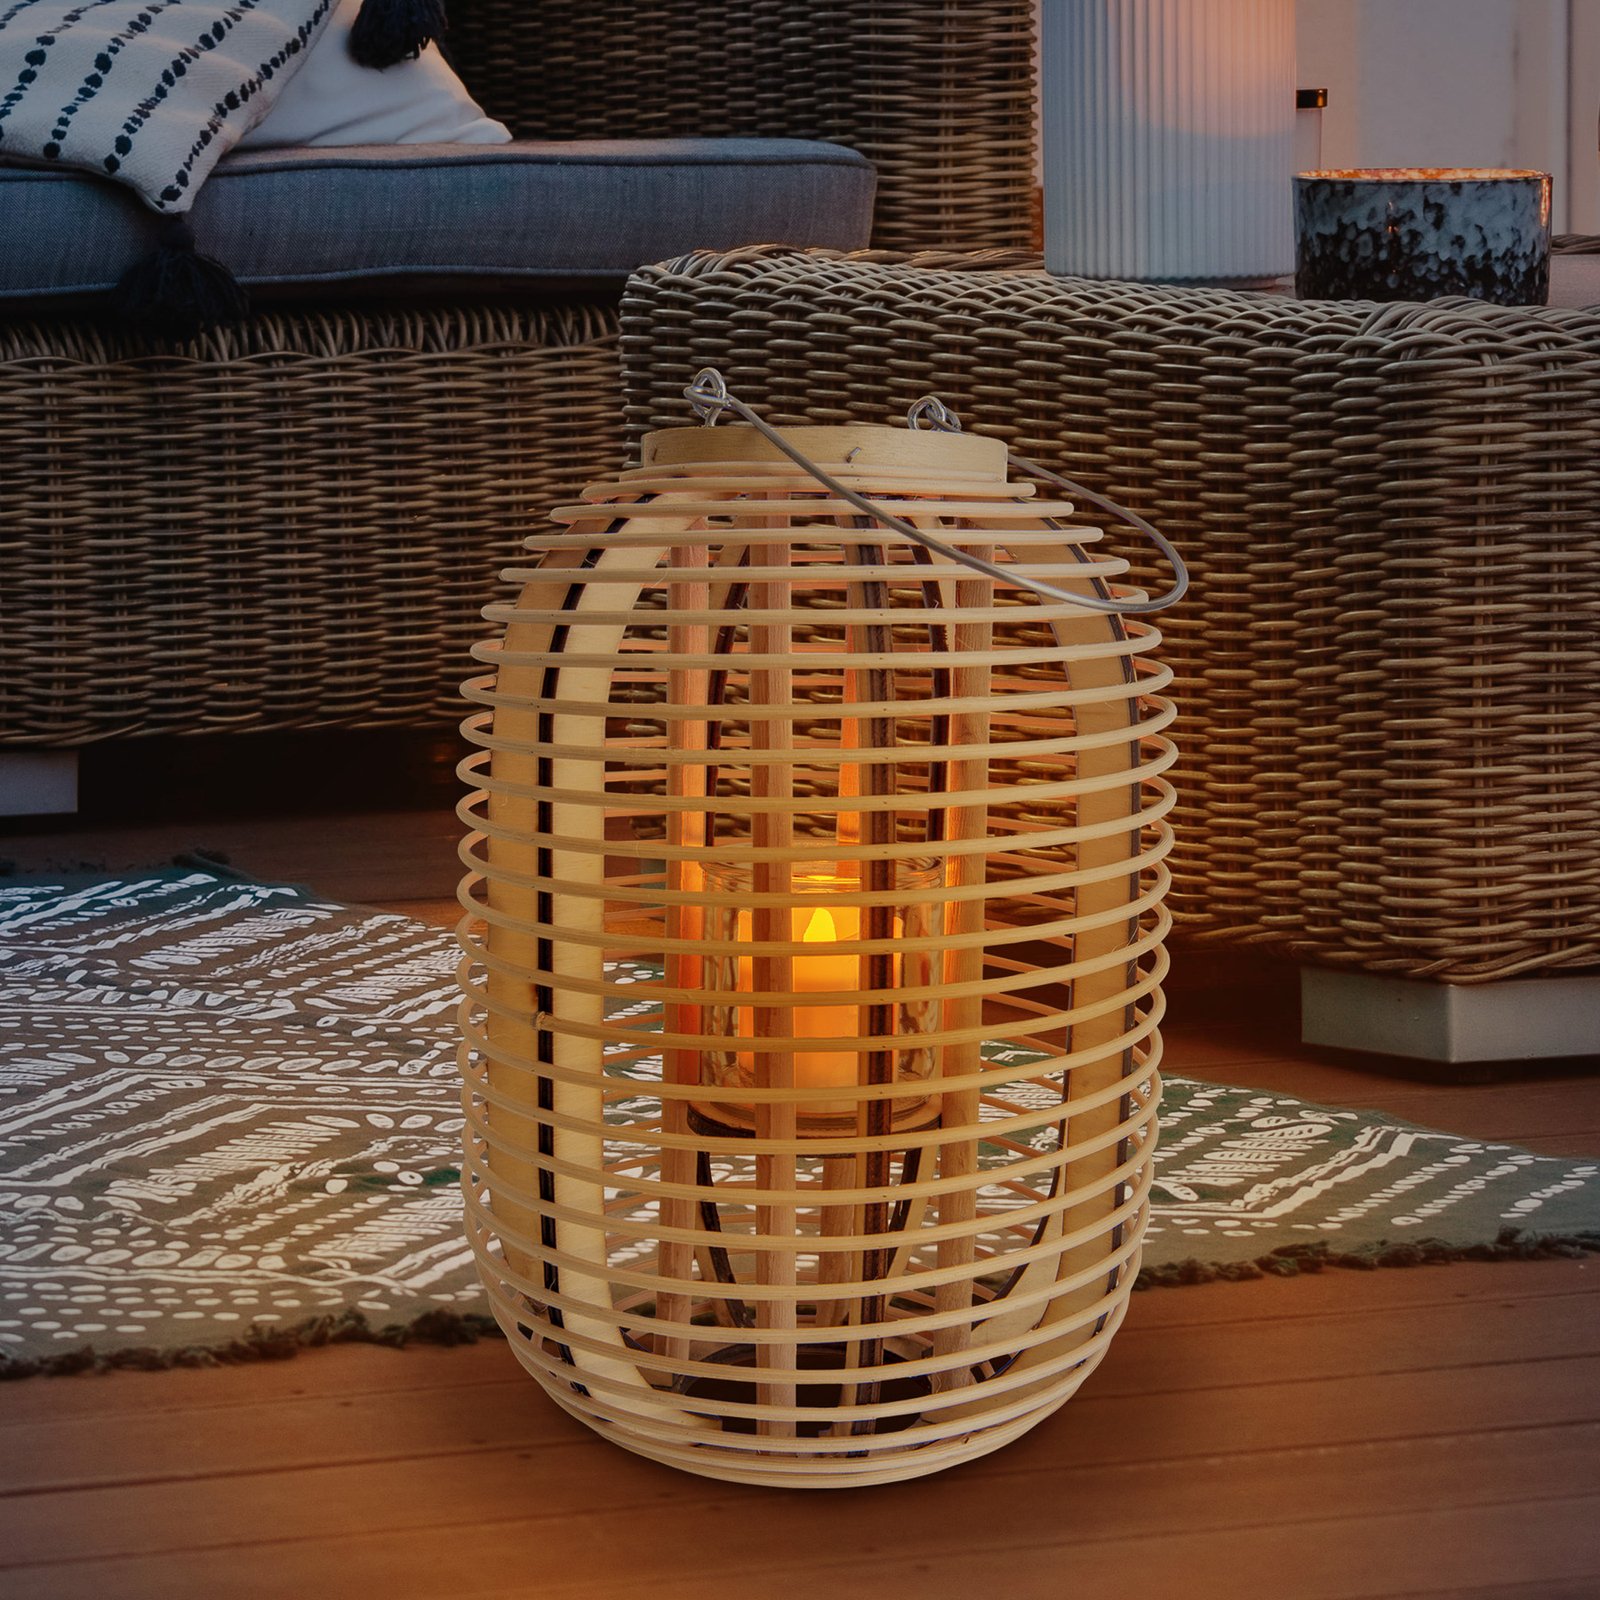 Basket LED solar decorative light H 32 cm, natural